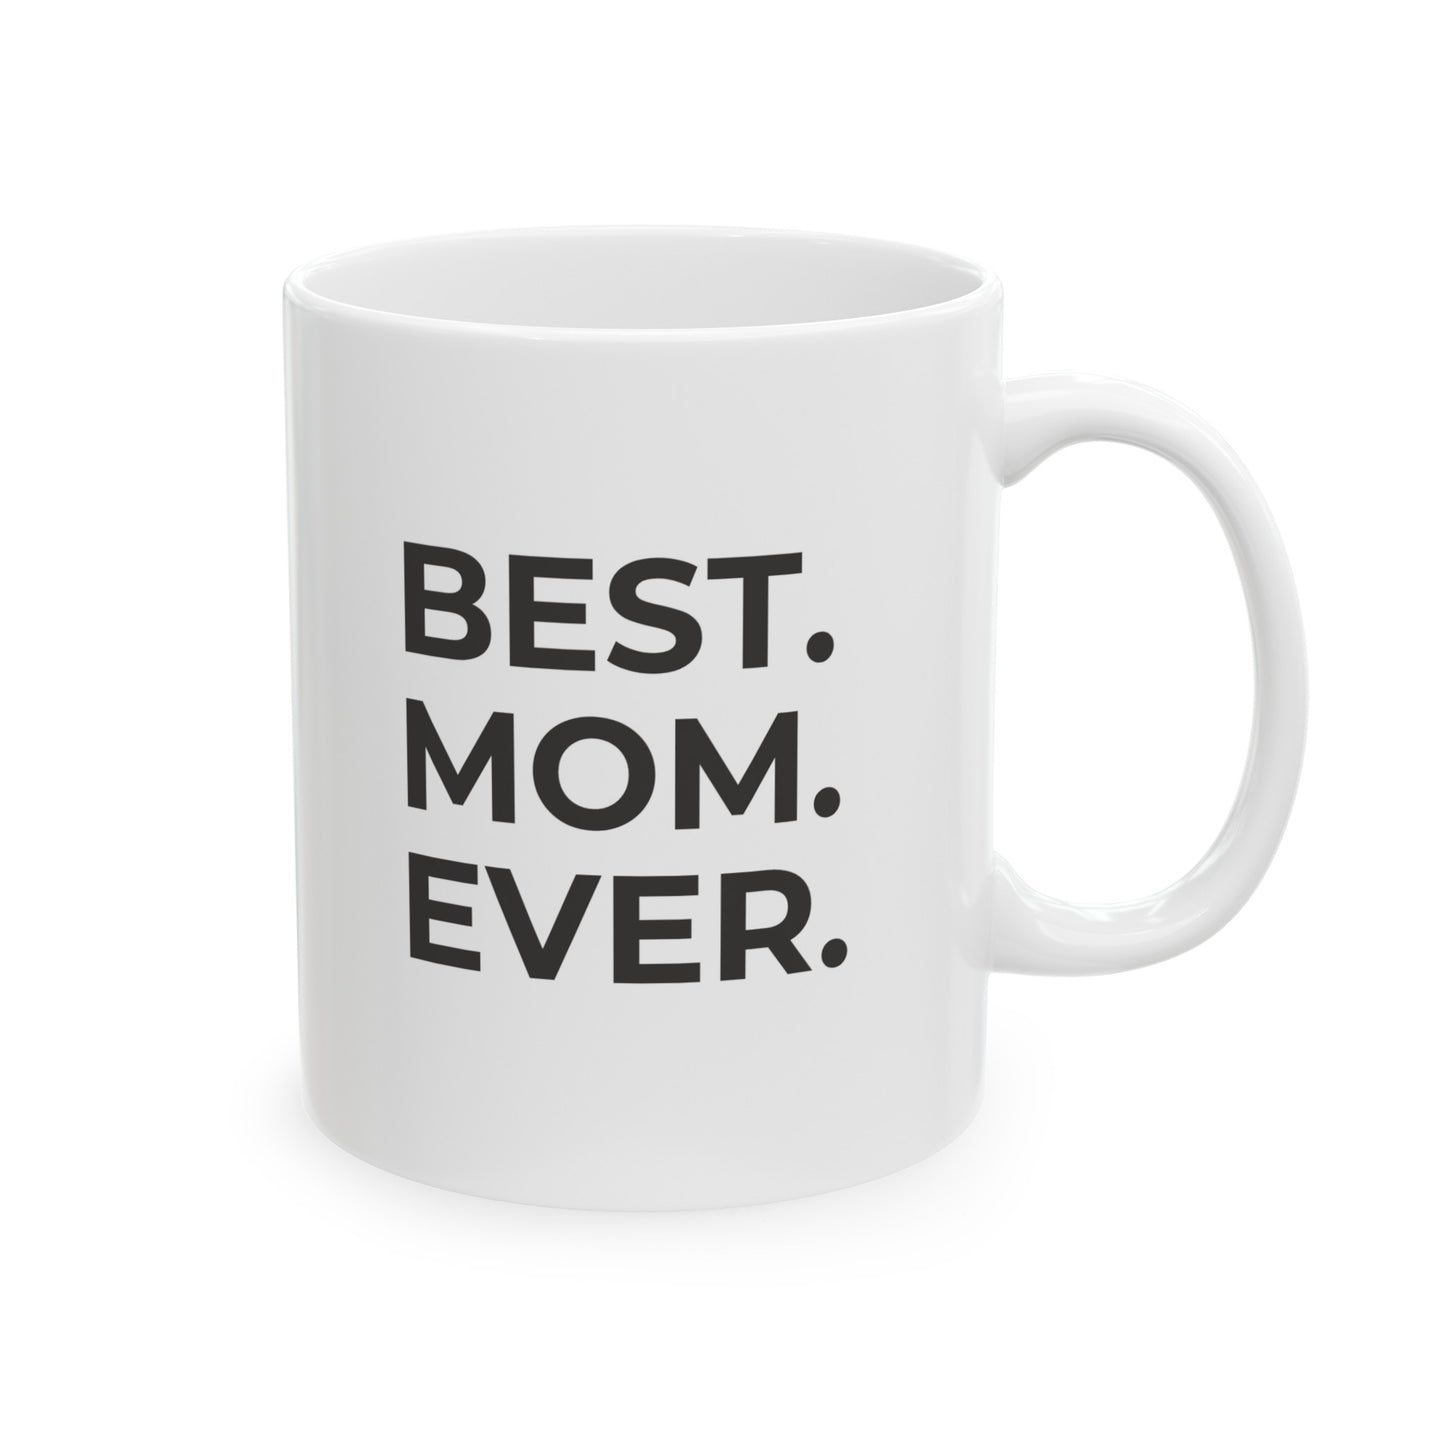 Best Mom Ever - Ceramic Mug 11oz